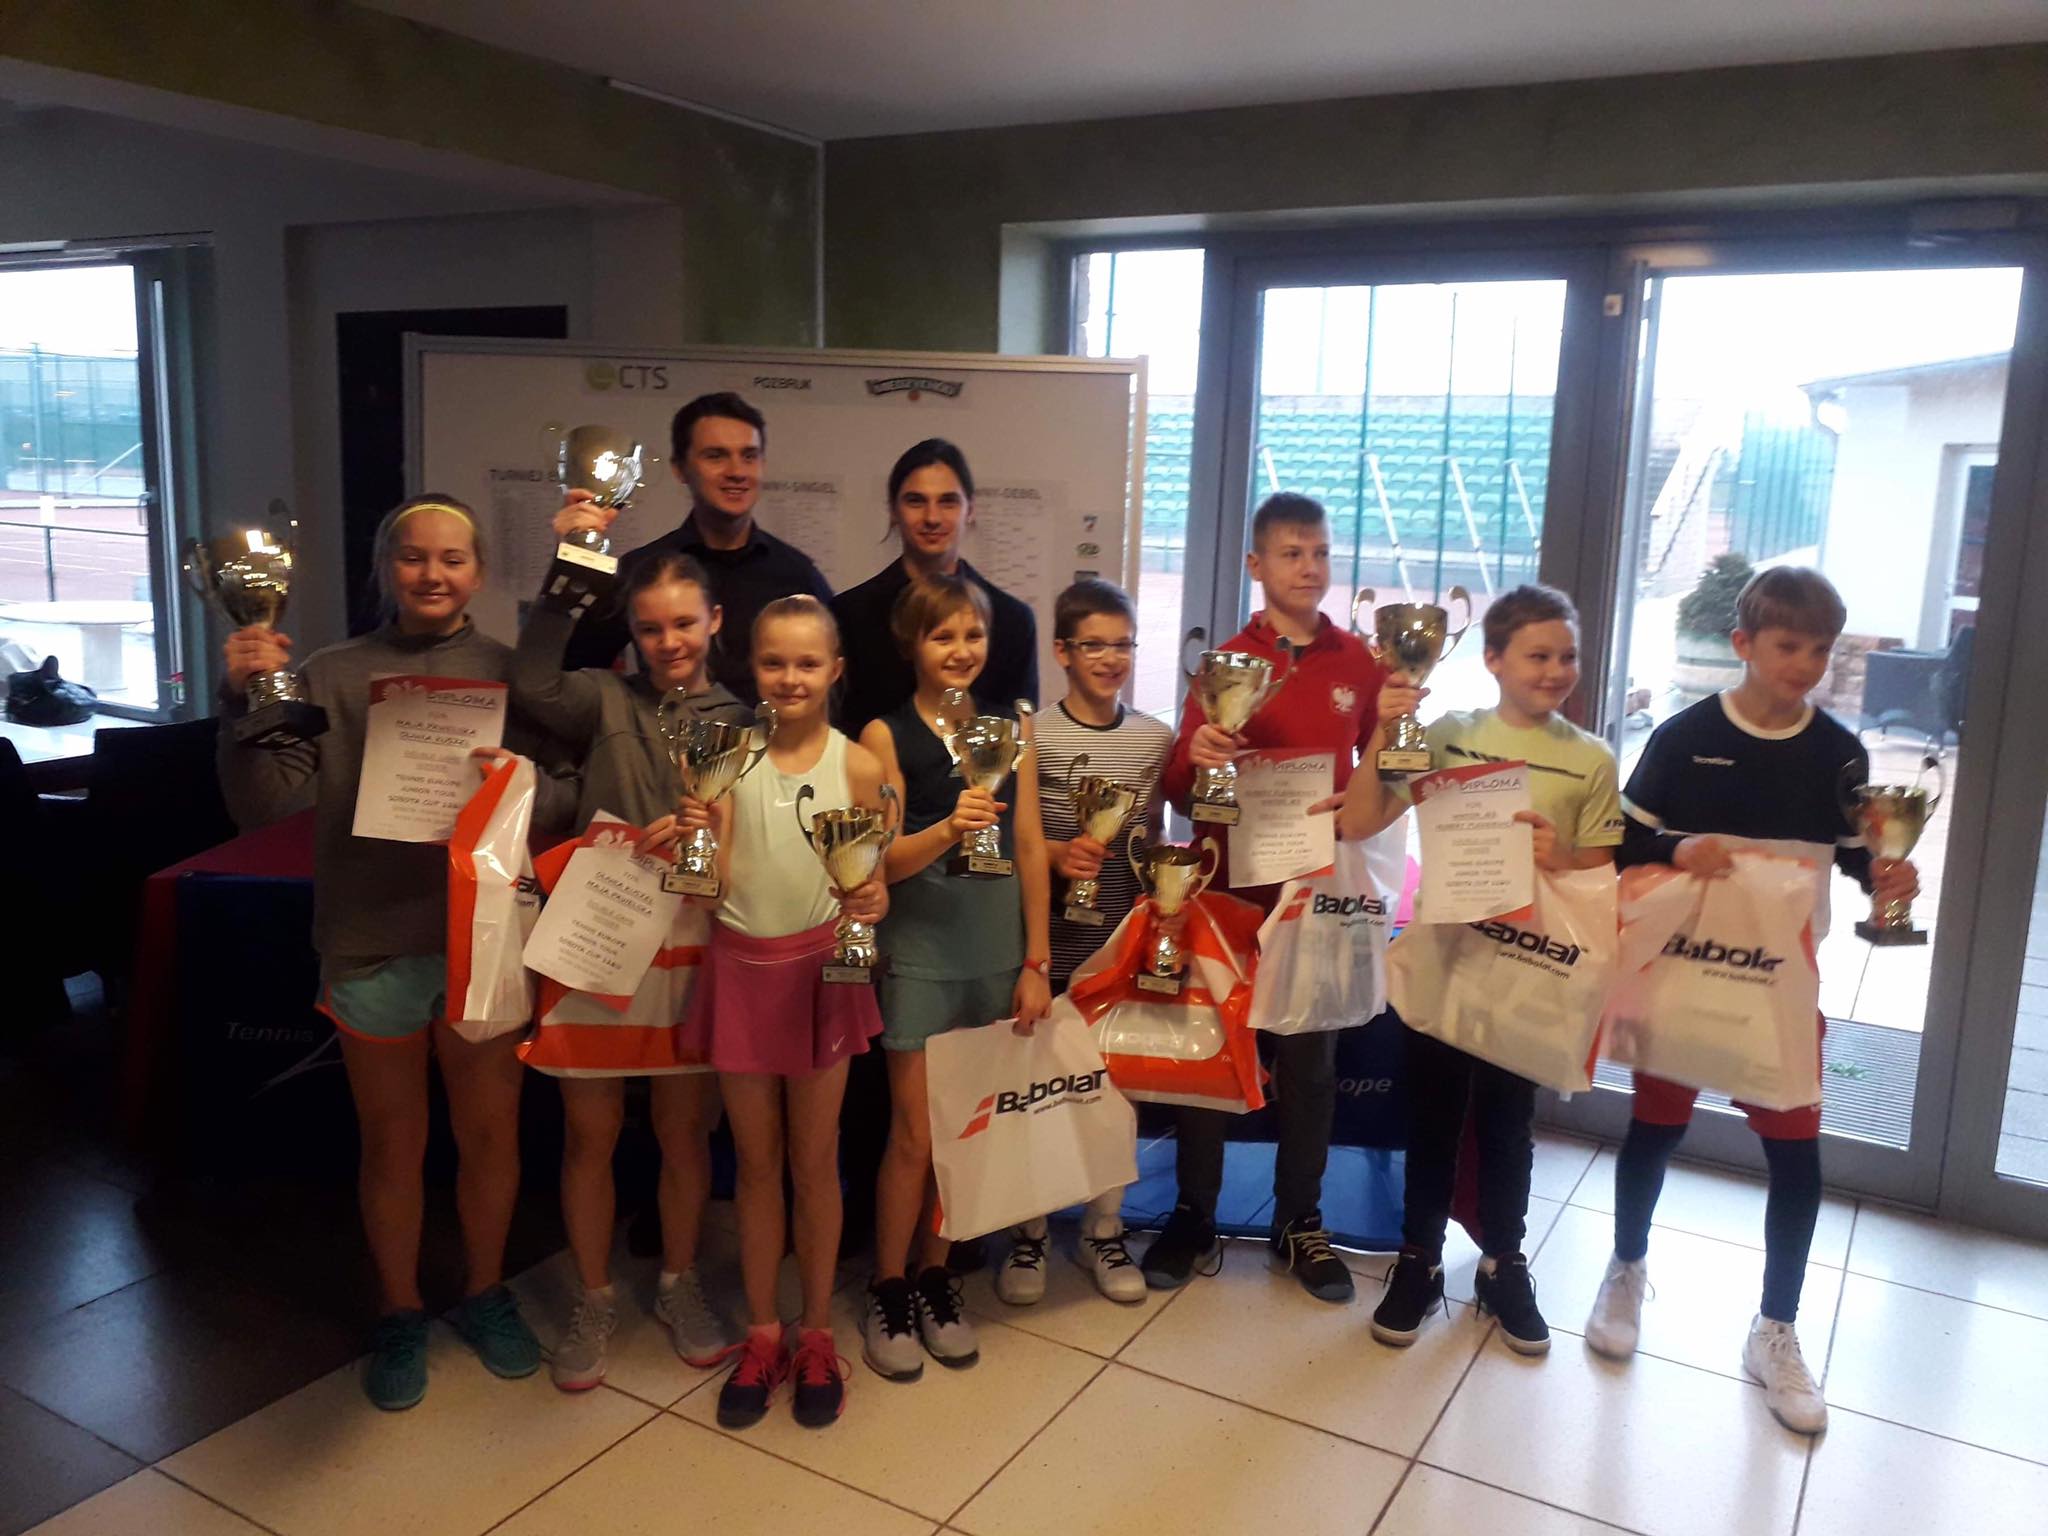 Na zdjęciu zwycięzcy Międzynarodowego Turnieju do lat 12 Sobota Cup Tennis Europe, dziewczynki i chłopcy prezentujący zdobyte nagrody i dyplomy oraz organizatorzy turnieju.